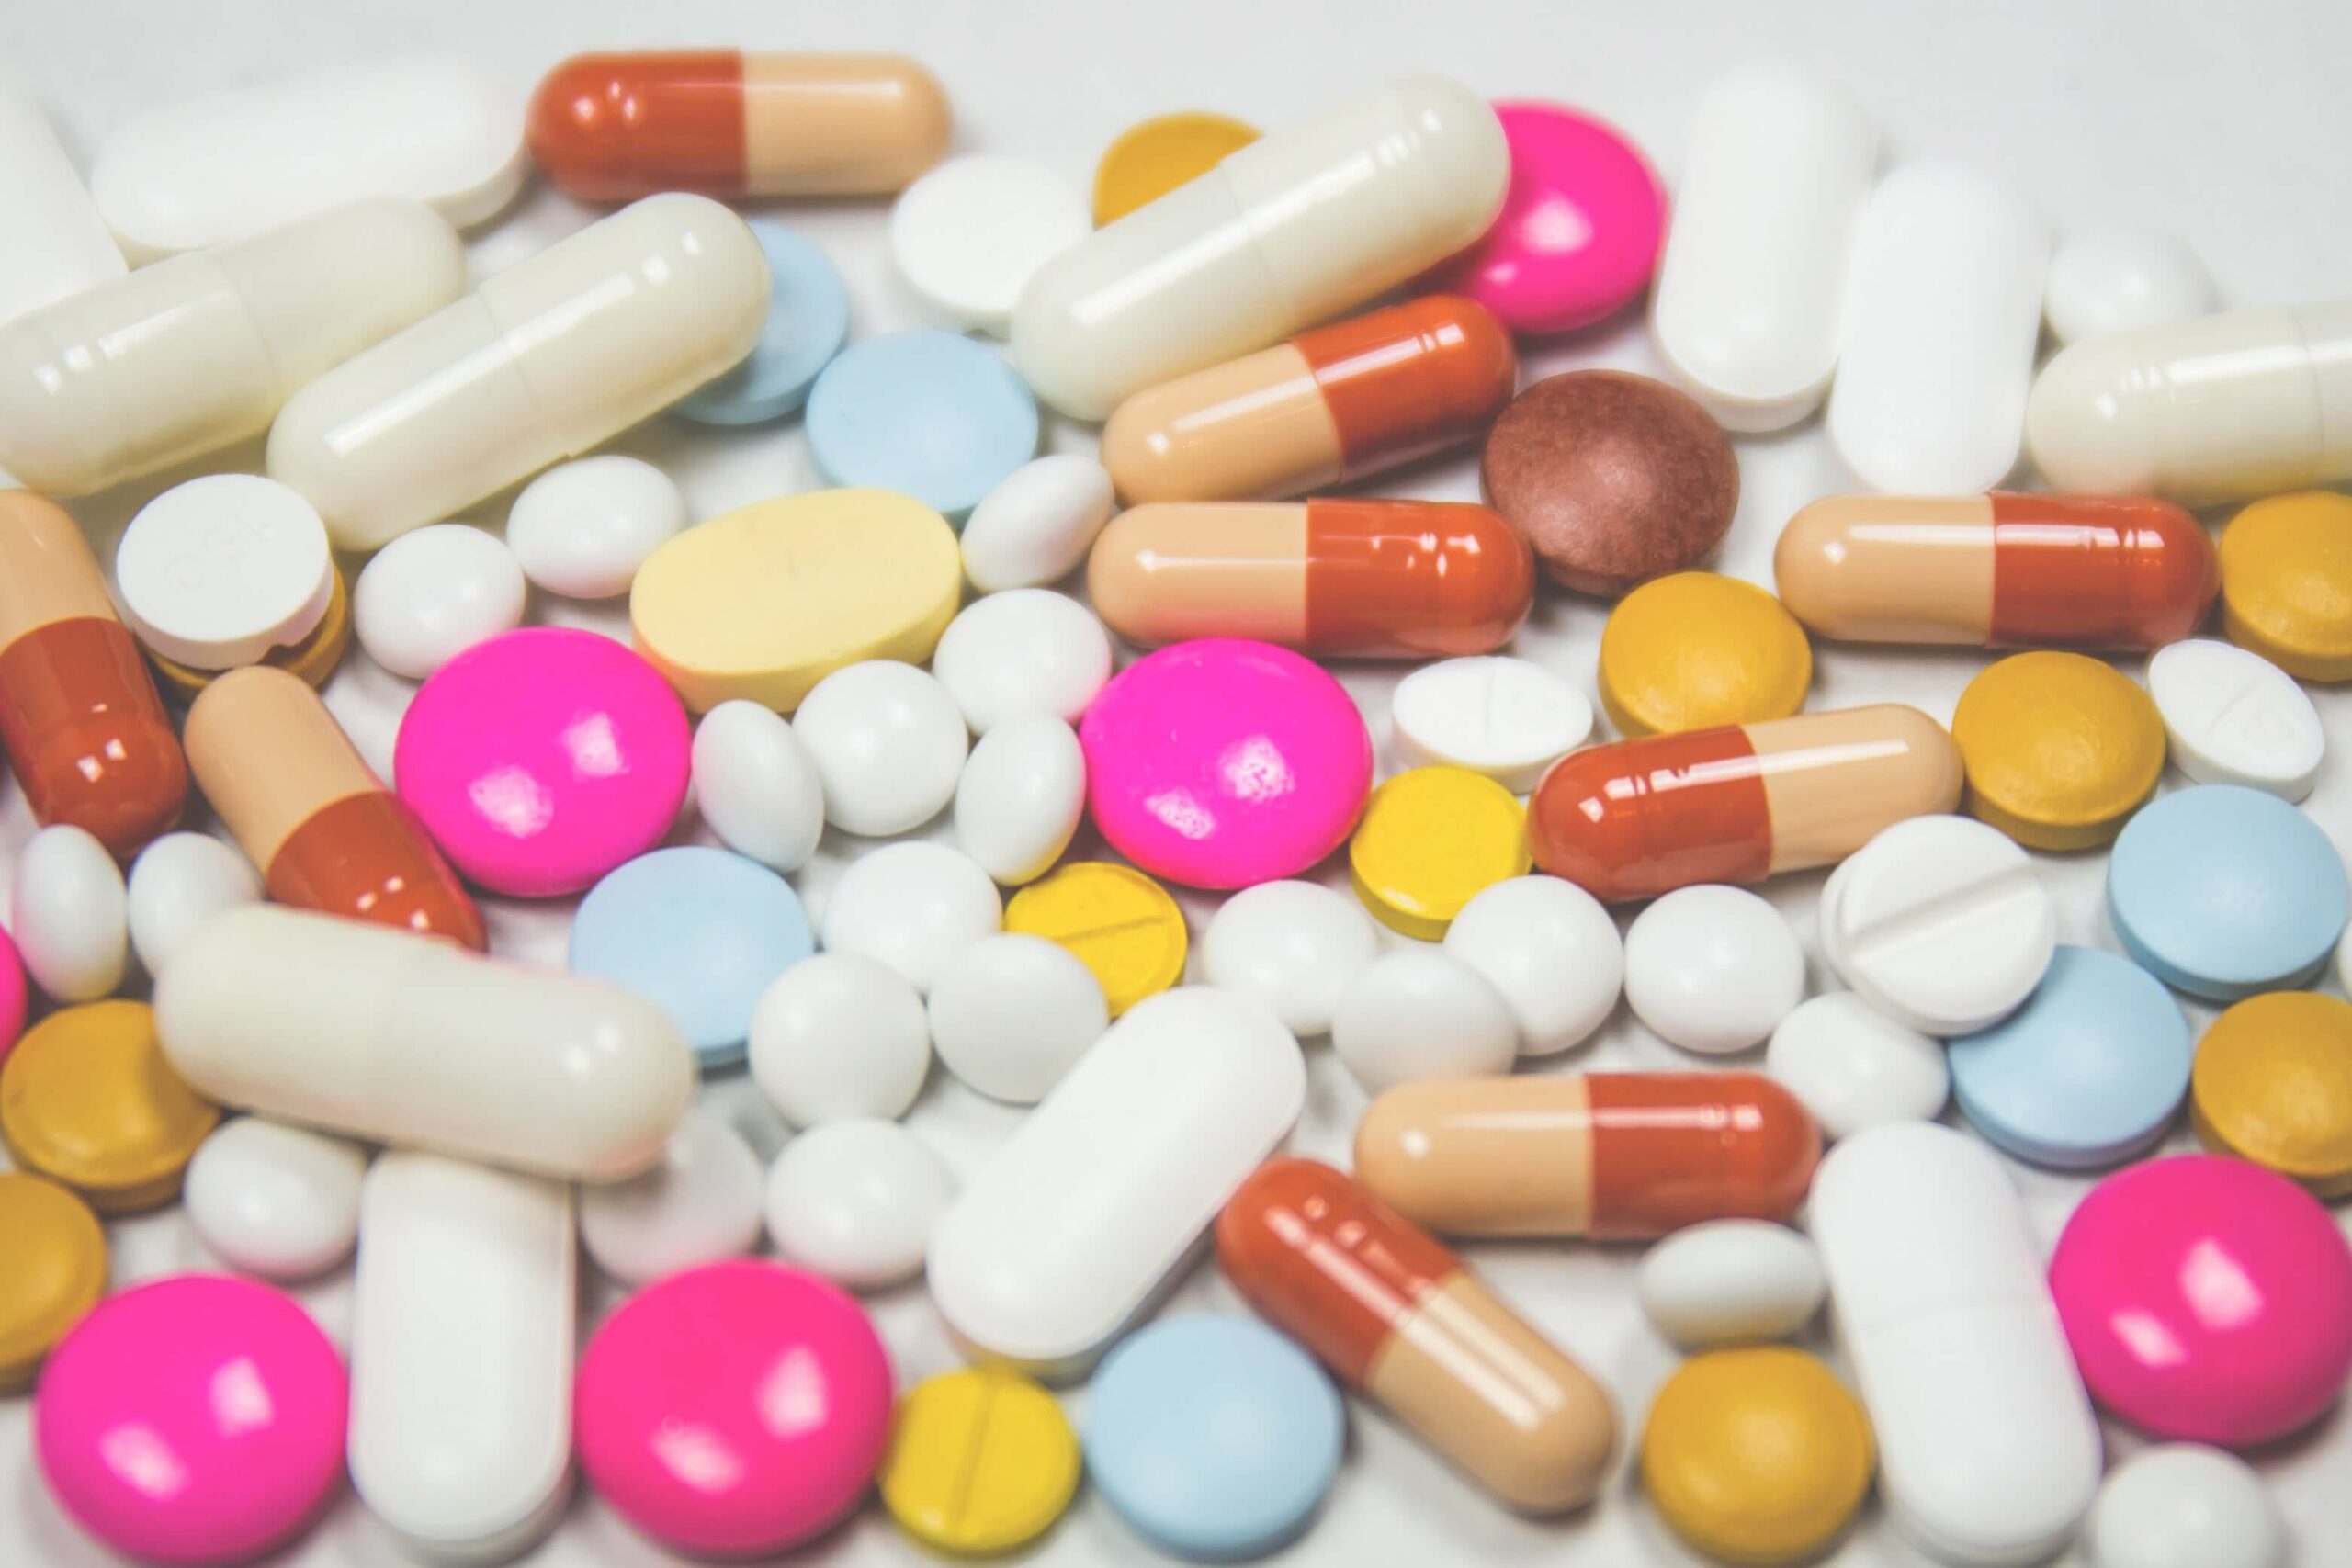 Uzależnienie od leków bez recepty – jak rozpoznać i przeciwdziałać?